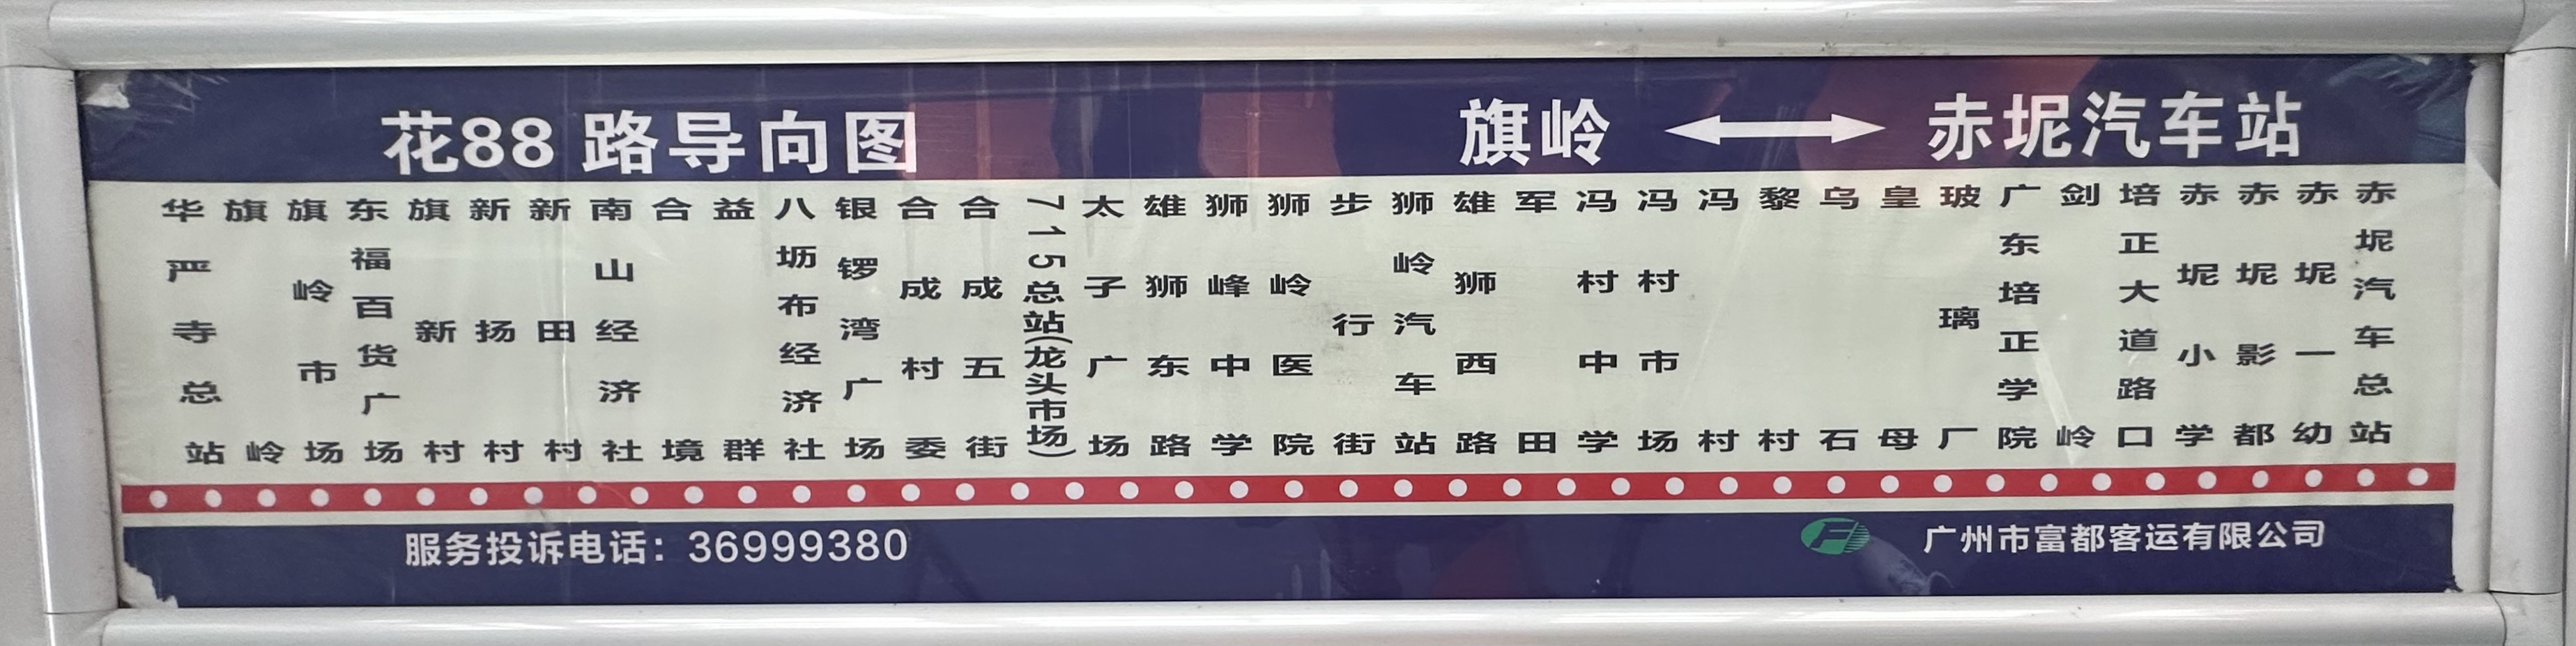 广州花88路公交车路线